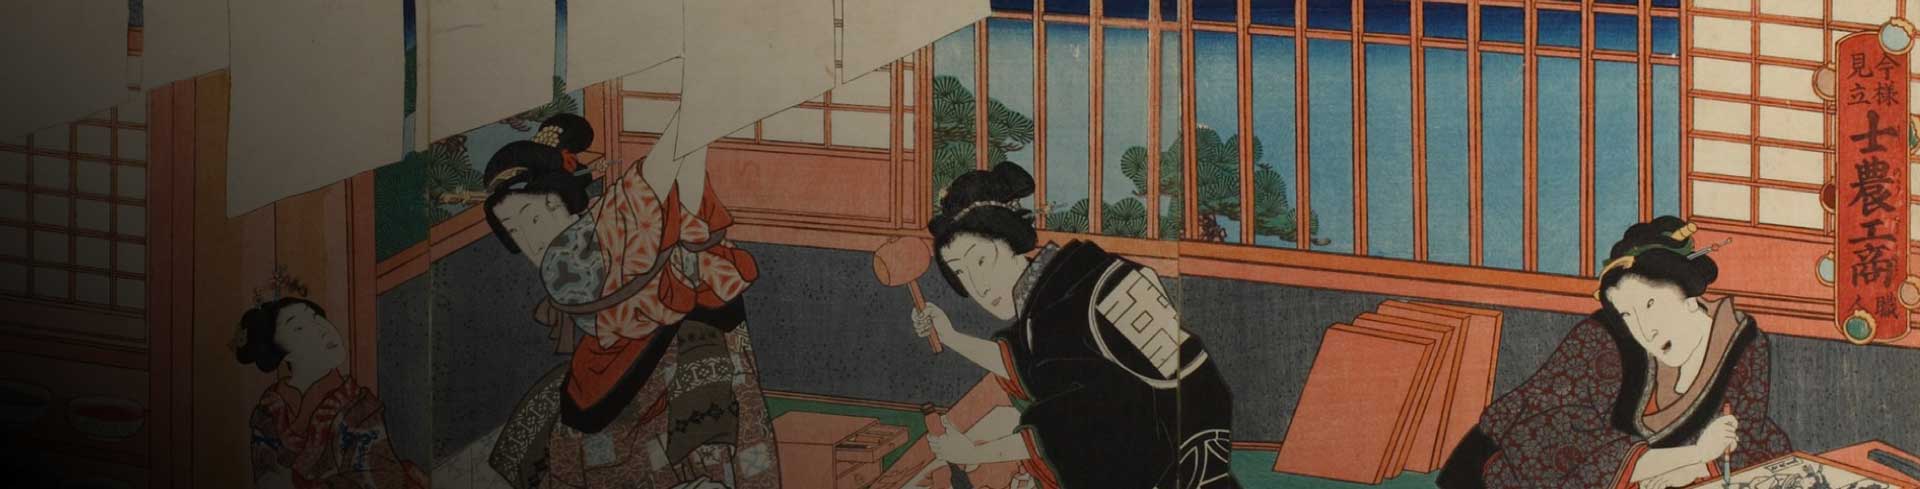 Introducción al grabado japonés: moku-hanga y ukiyo-e